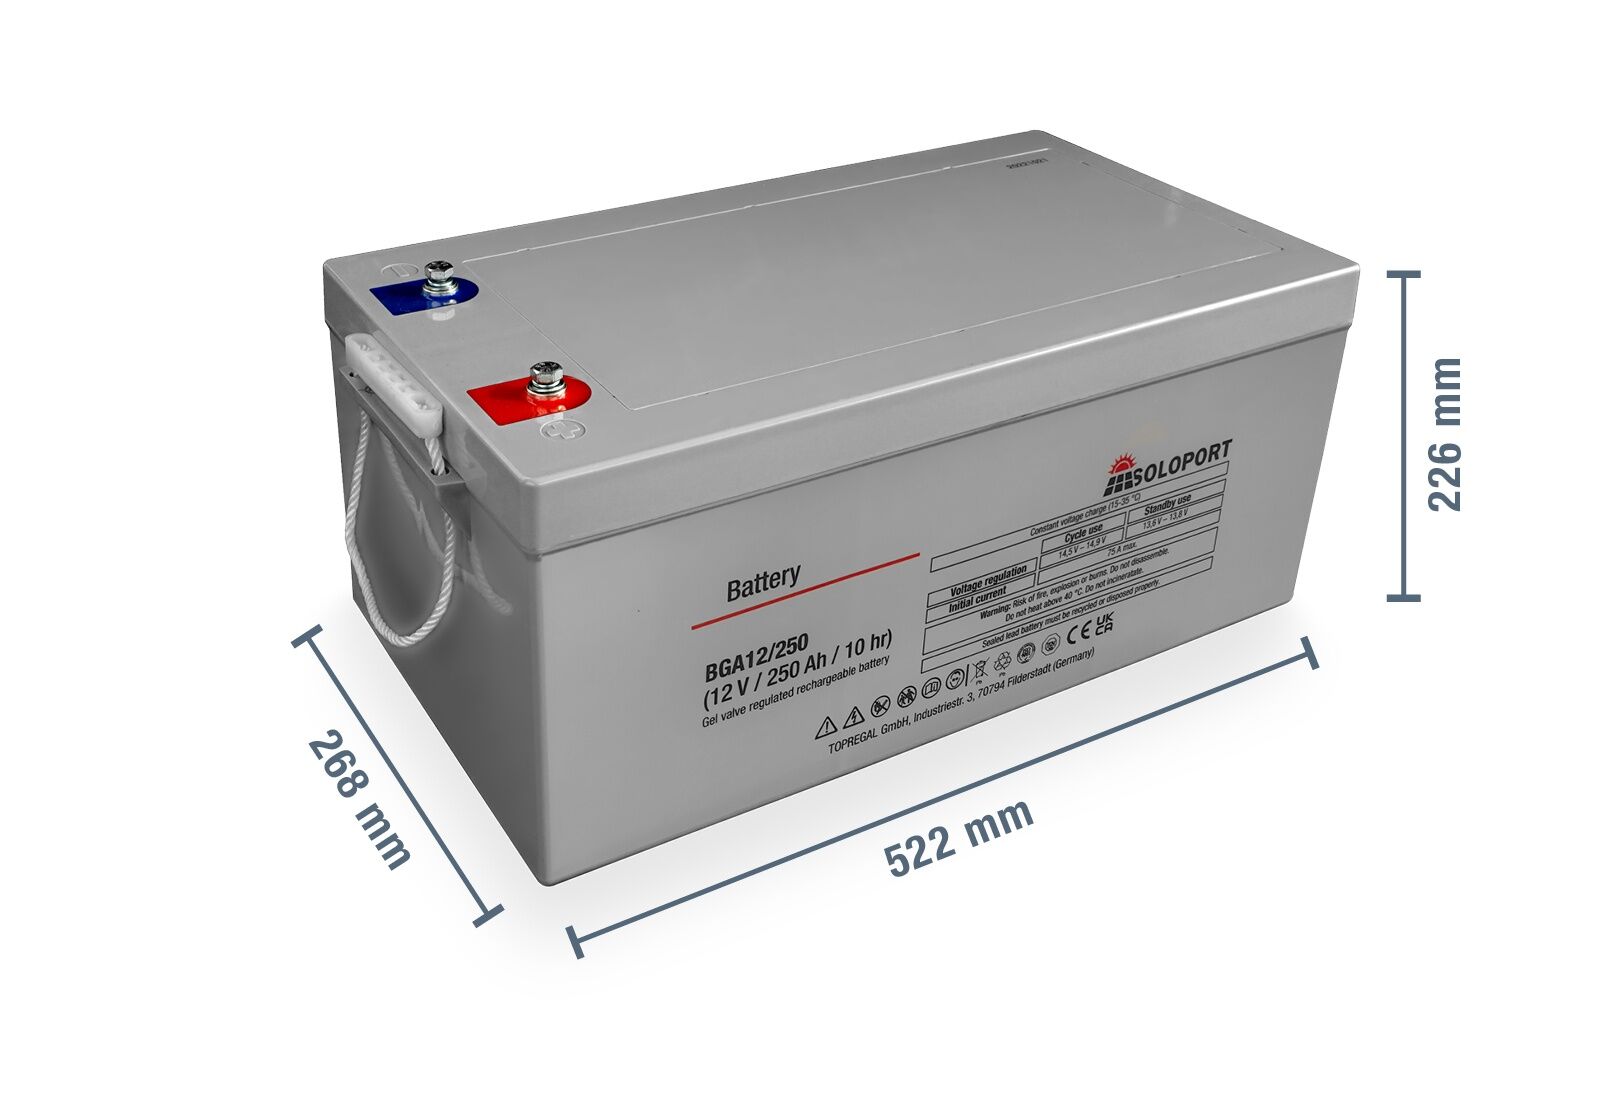 1 x Blei-Gel Batterie BGA12/250, 12 V, 250 Ah, SoloPort